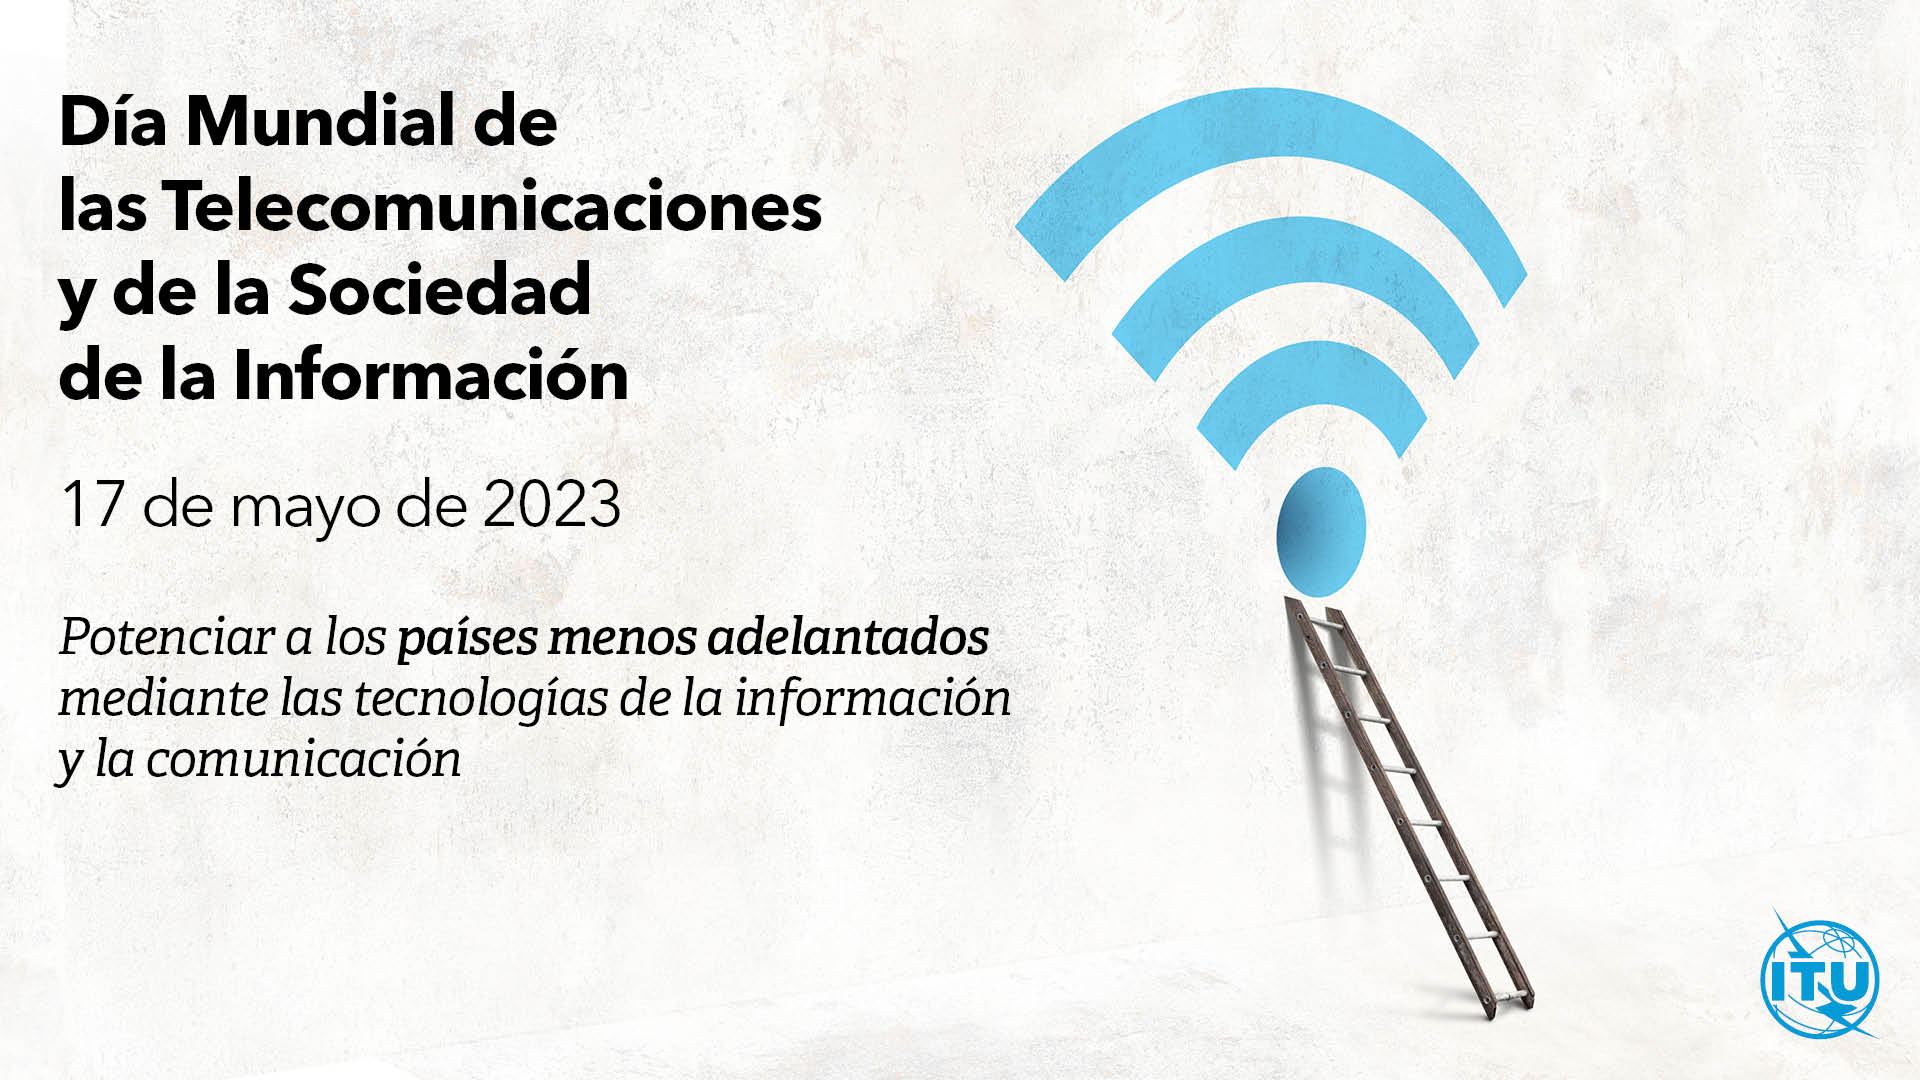 Póster de la Unión Internacional de Telecomunicaciones sobre el Día de las telecomunicaciones con el lema: Empoderar a los países menos desarrollados a través de las tecnologías de la información y la comunicación